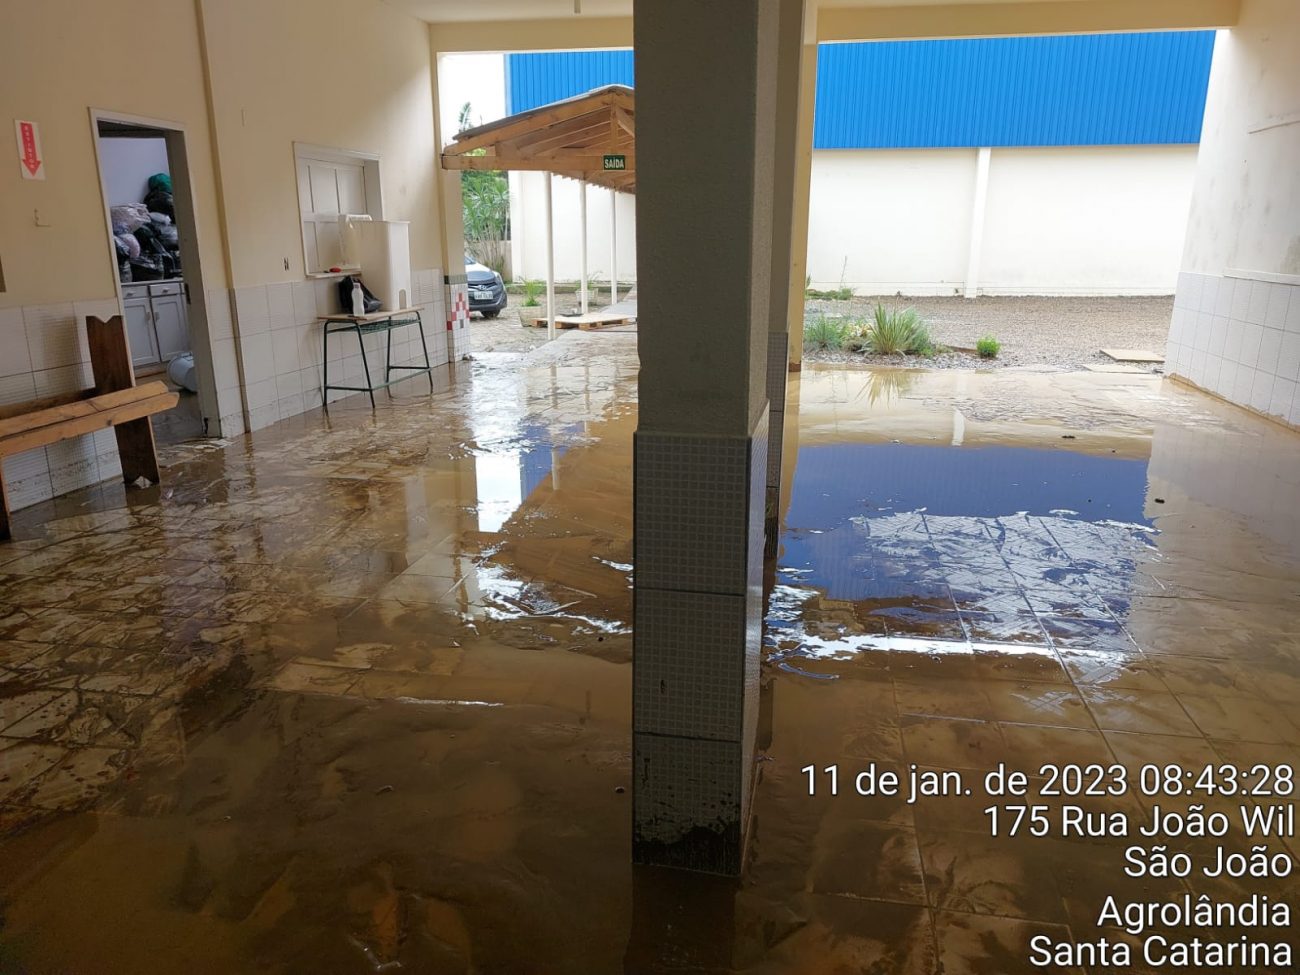 Casa, empresa e escola foram atingidas pela forte chuva em Agrolândia - Defesa Civil Agrolândia/Reprodução/ND